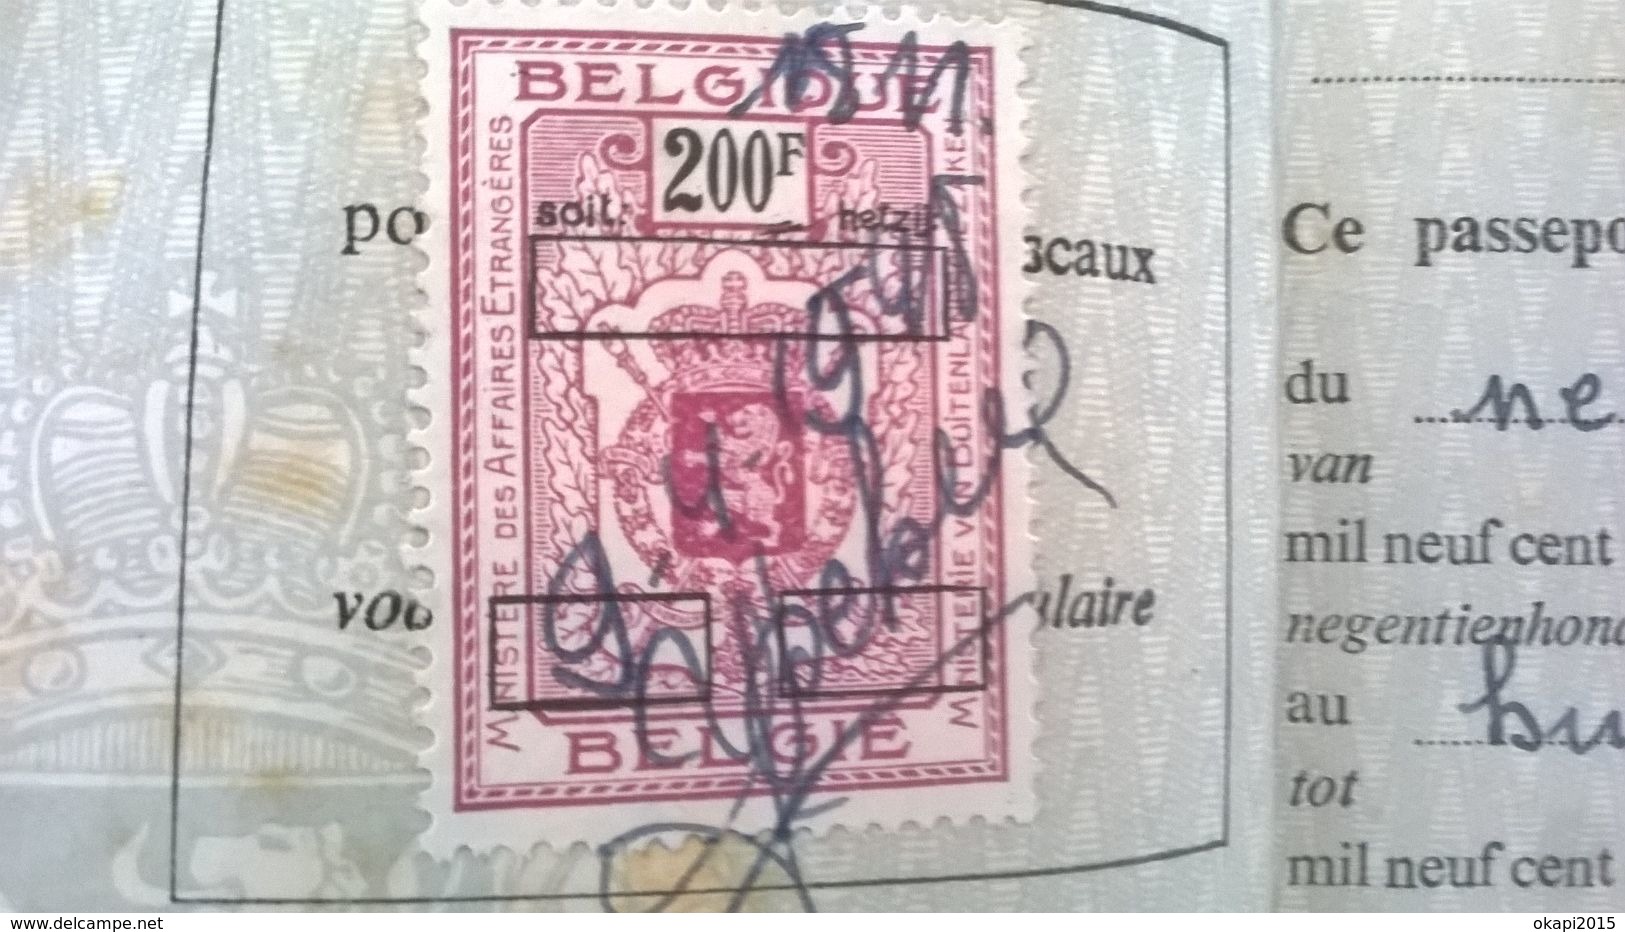 VIEUX PASSEPORT BELGIQUE REISPAS BELGIË  PASSPORT BELGIUM EN PAPIER ET EN CARTON ANNÉE 1948 . GUERRE 1940 - 1945. - Documents Historiques